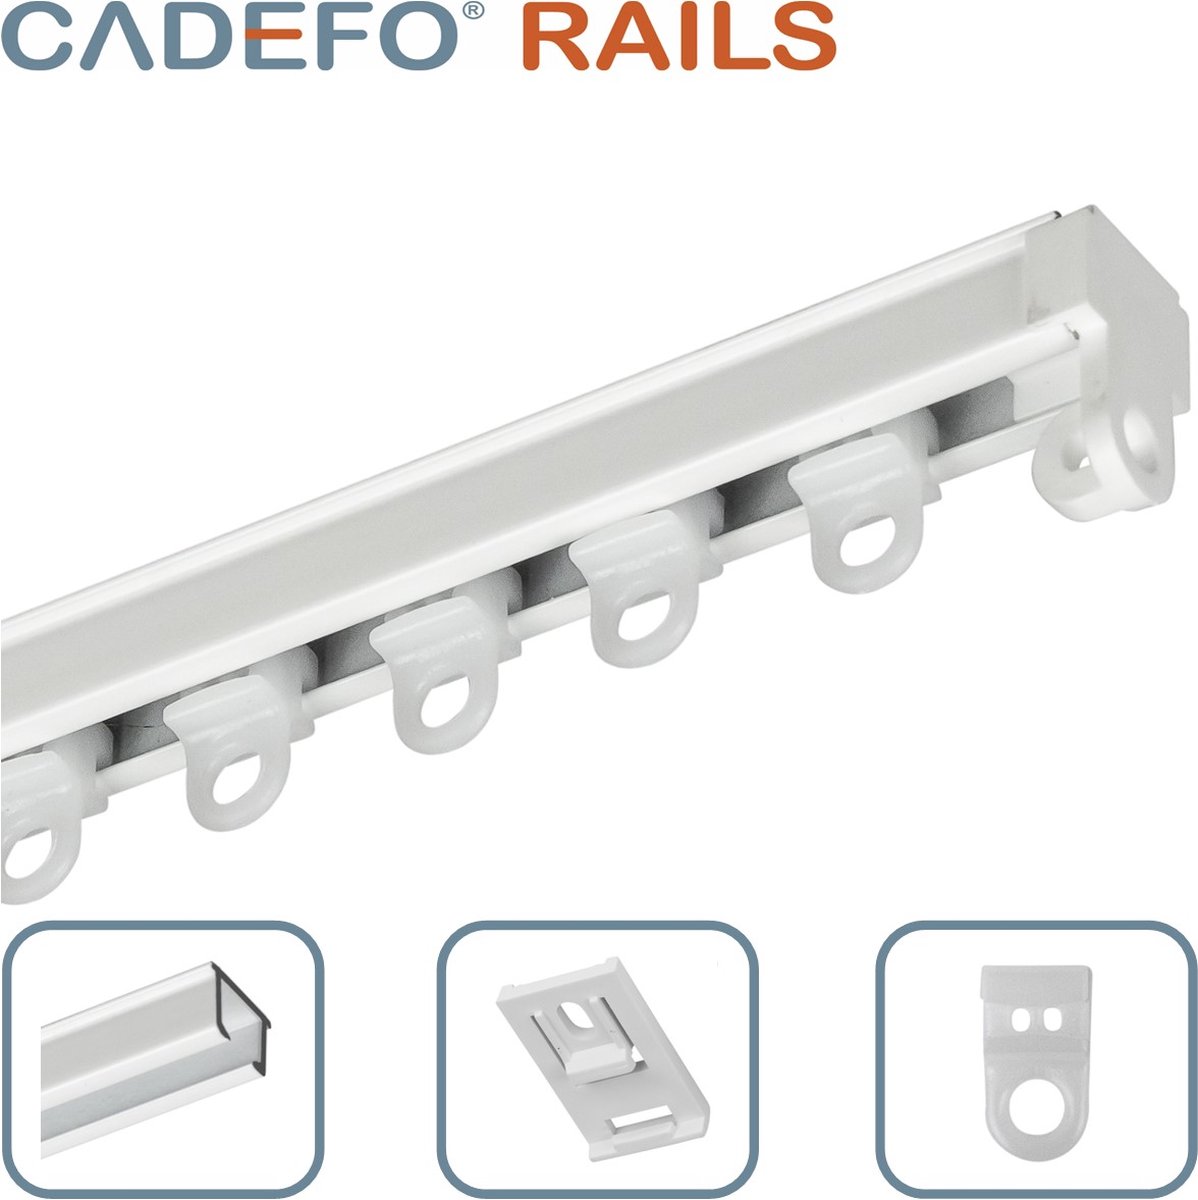 CADEFO RAILS (451 - 500 cm) Gordijnrails - Compleet op maat! - UIT 1 STUK - Leverbaar tot 6 meter - Plafondbevestiging - Lengte 472 cm